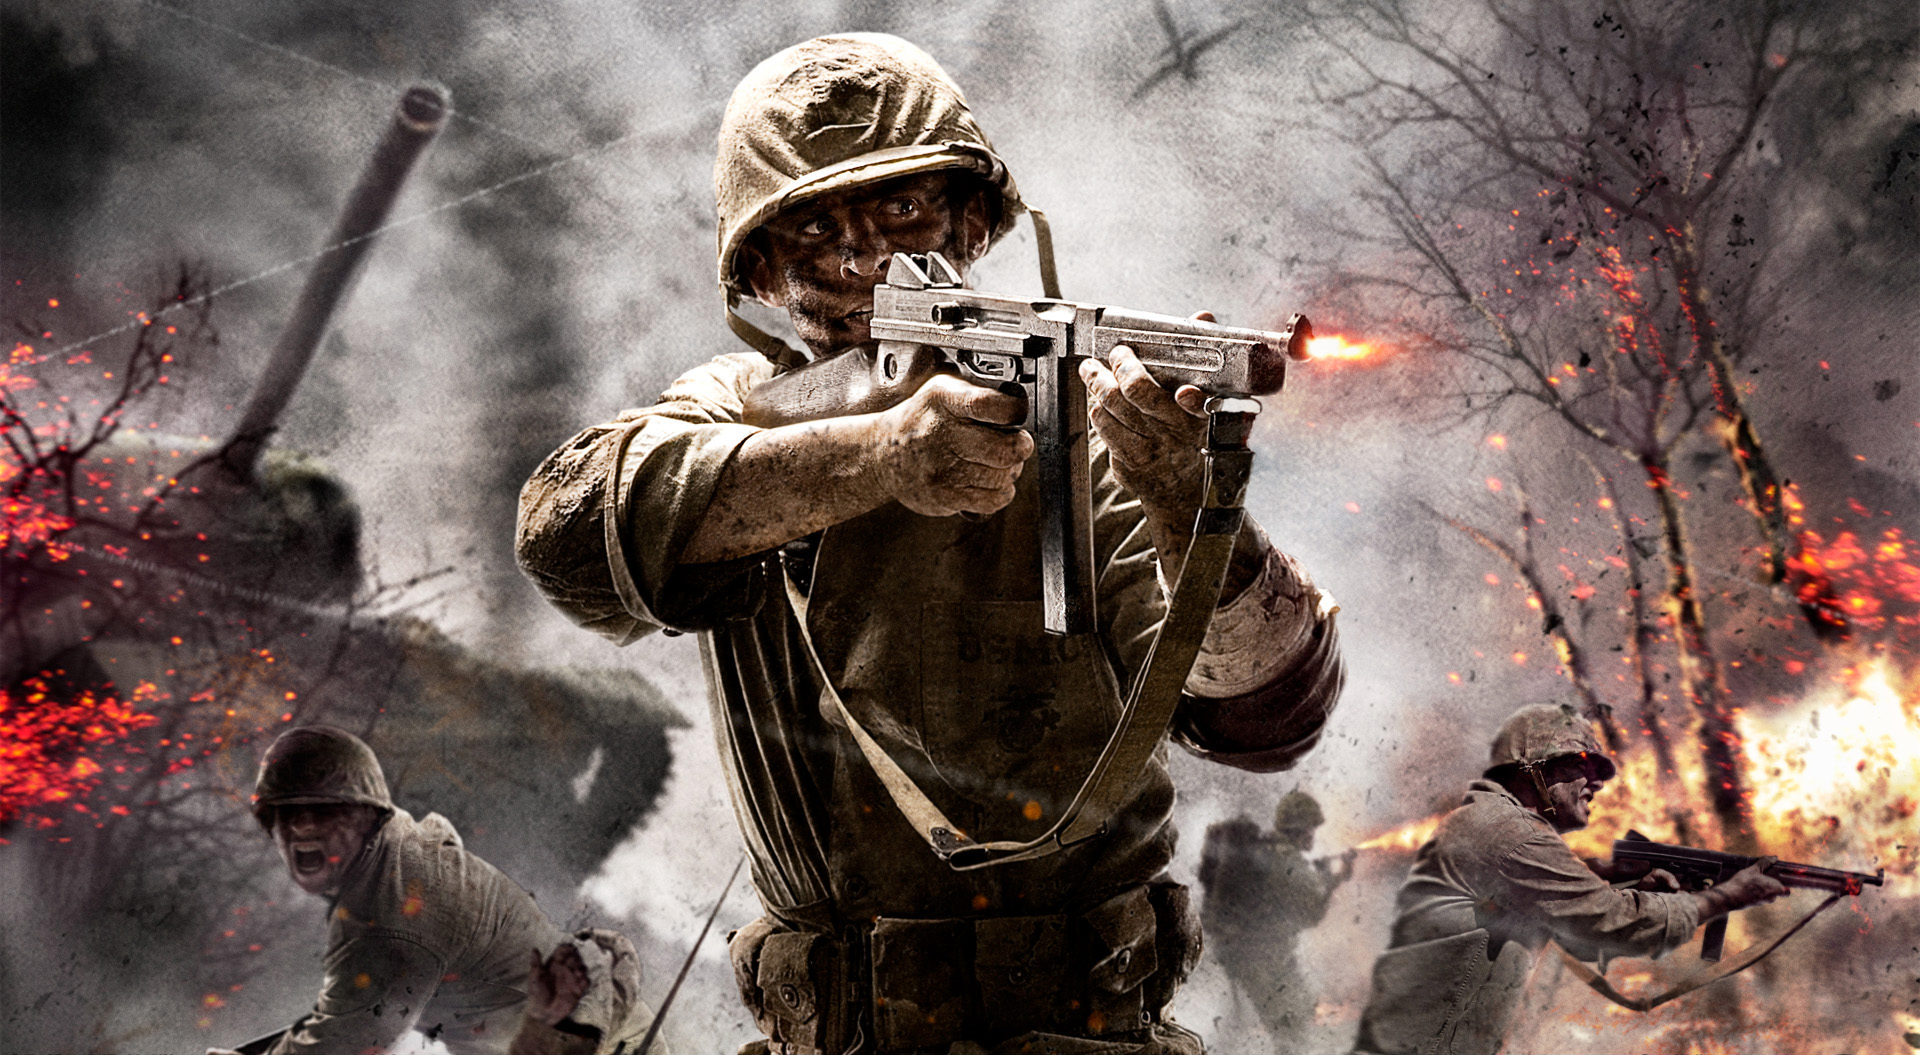 Скачать обои Call Of Duty Мир В Войне на телефон бесплатно